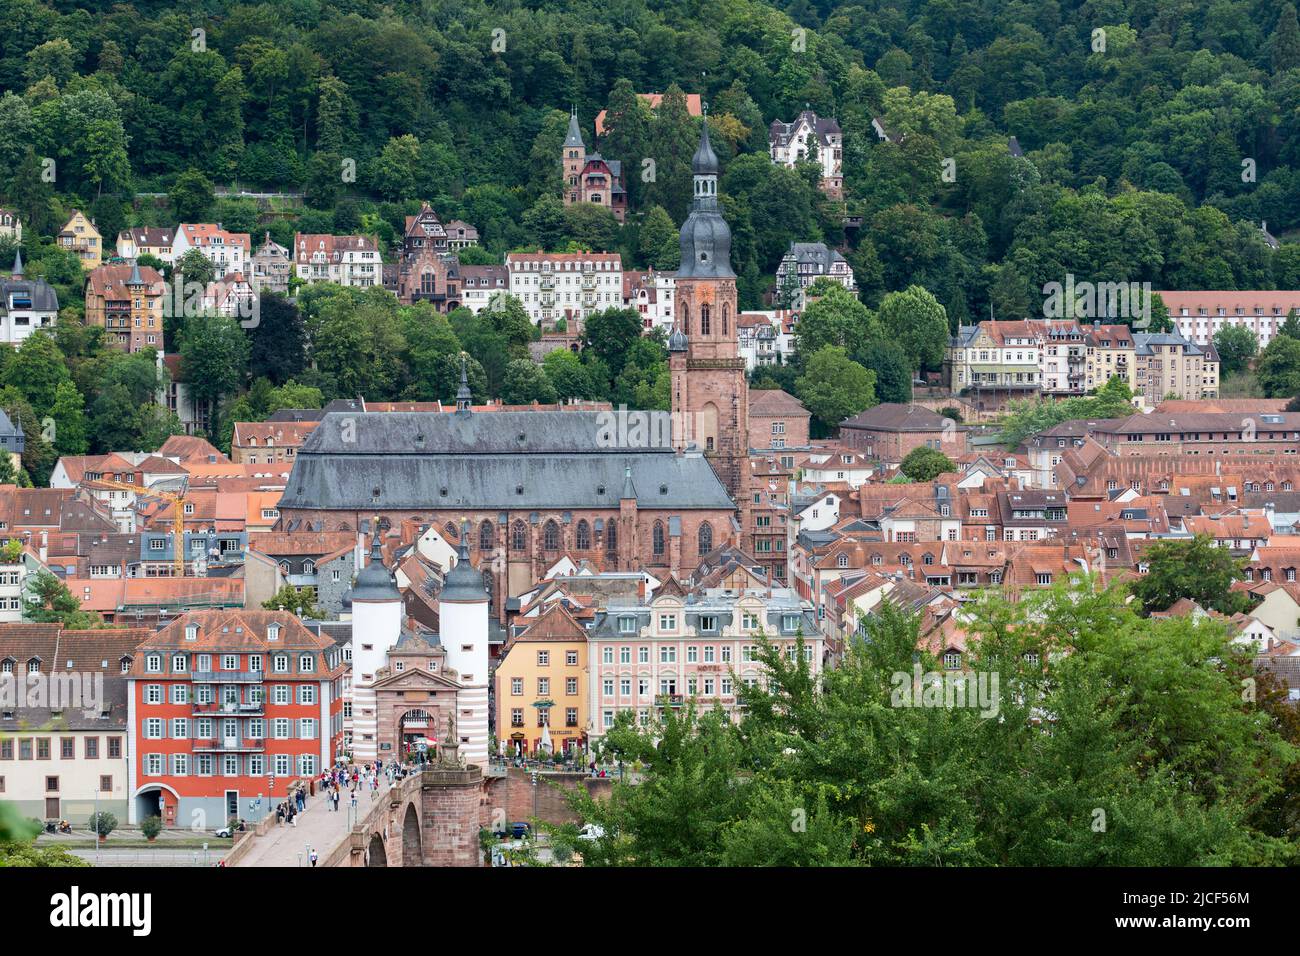 Heidelberg, Germania - 26 agosto 2021: Vista sulla Chiesa dello Spirito Santo (Heiliggeistkirche). Uno dei punti di maggior interesse turistico di Heidelberg. Foto Stock